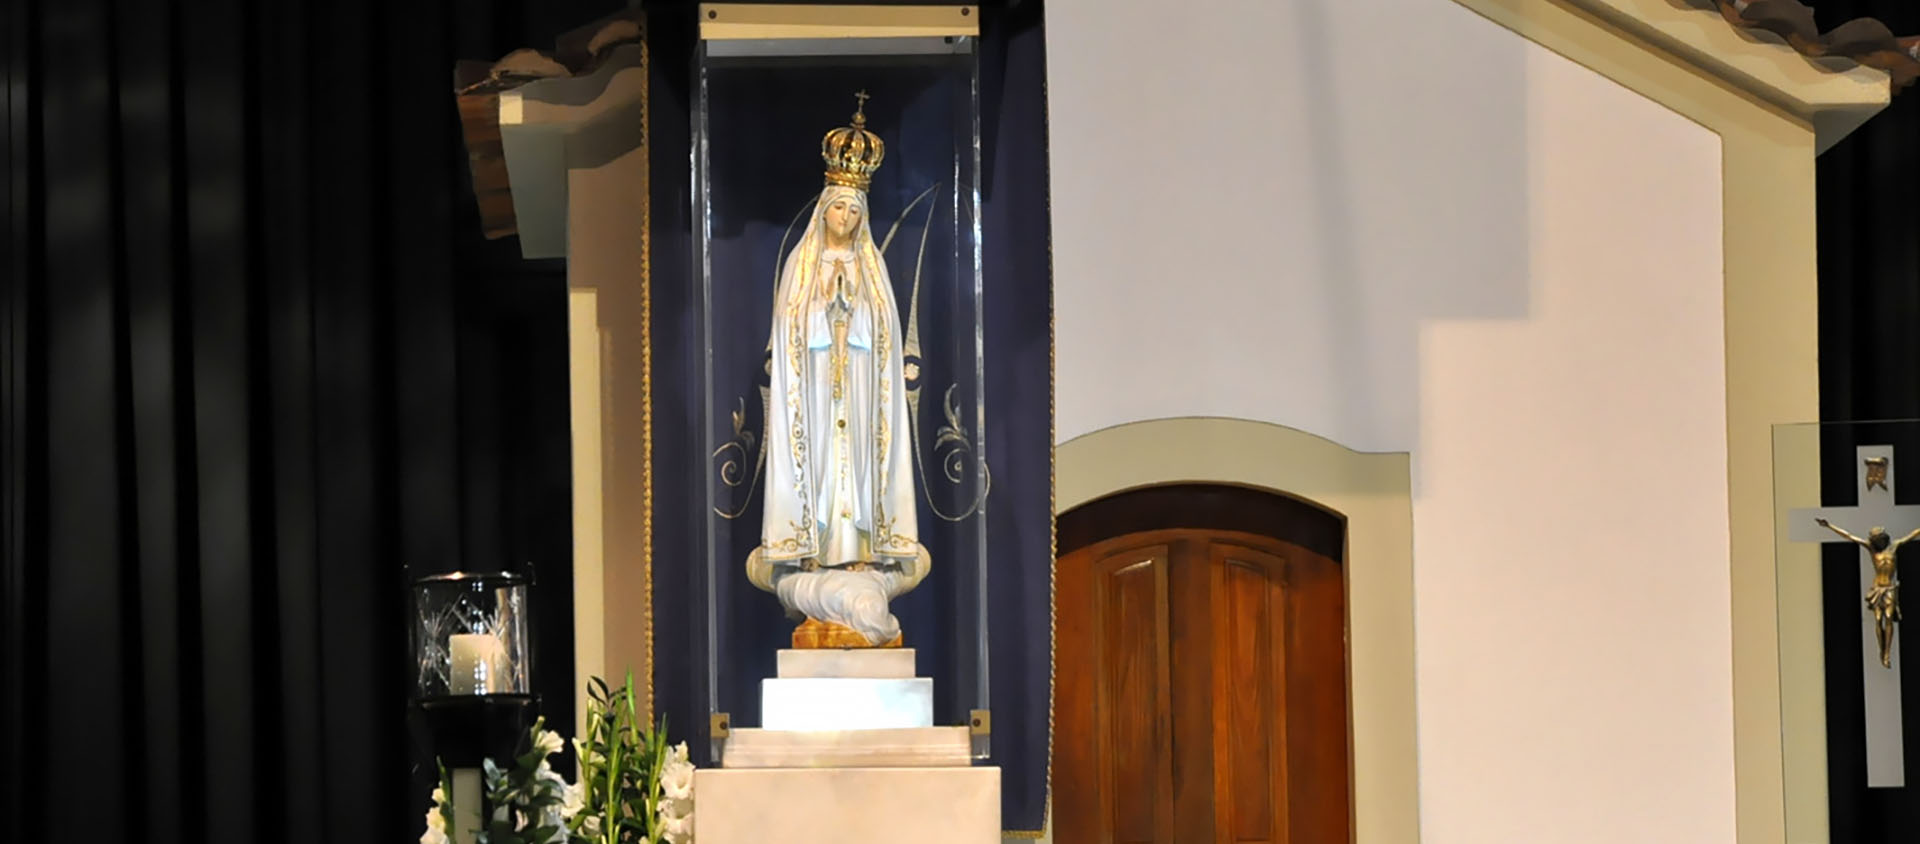 La statue de la Vierge de Fatima originale reste dans le sanctuaire. Ce sont des copies qui voyagent dans le monde | © János Korom Dr/Wikimedia commons/CC BY-SA 2.0 